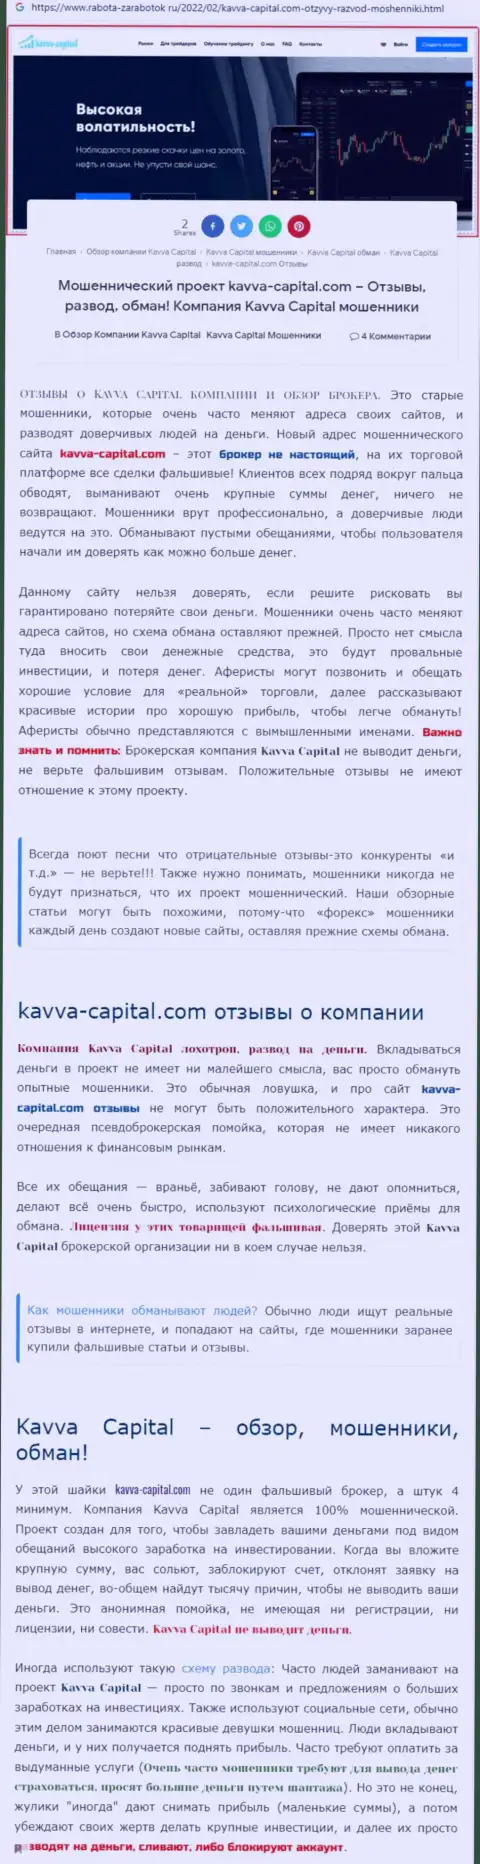 Быстрее выводите финансовые средства из компании Kavva Capital - КИДАЮТ ! (обзор противозаконных действий интернет ворюг)